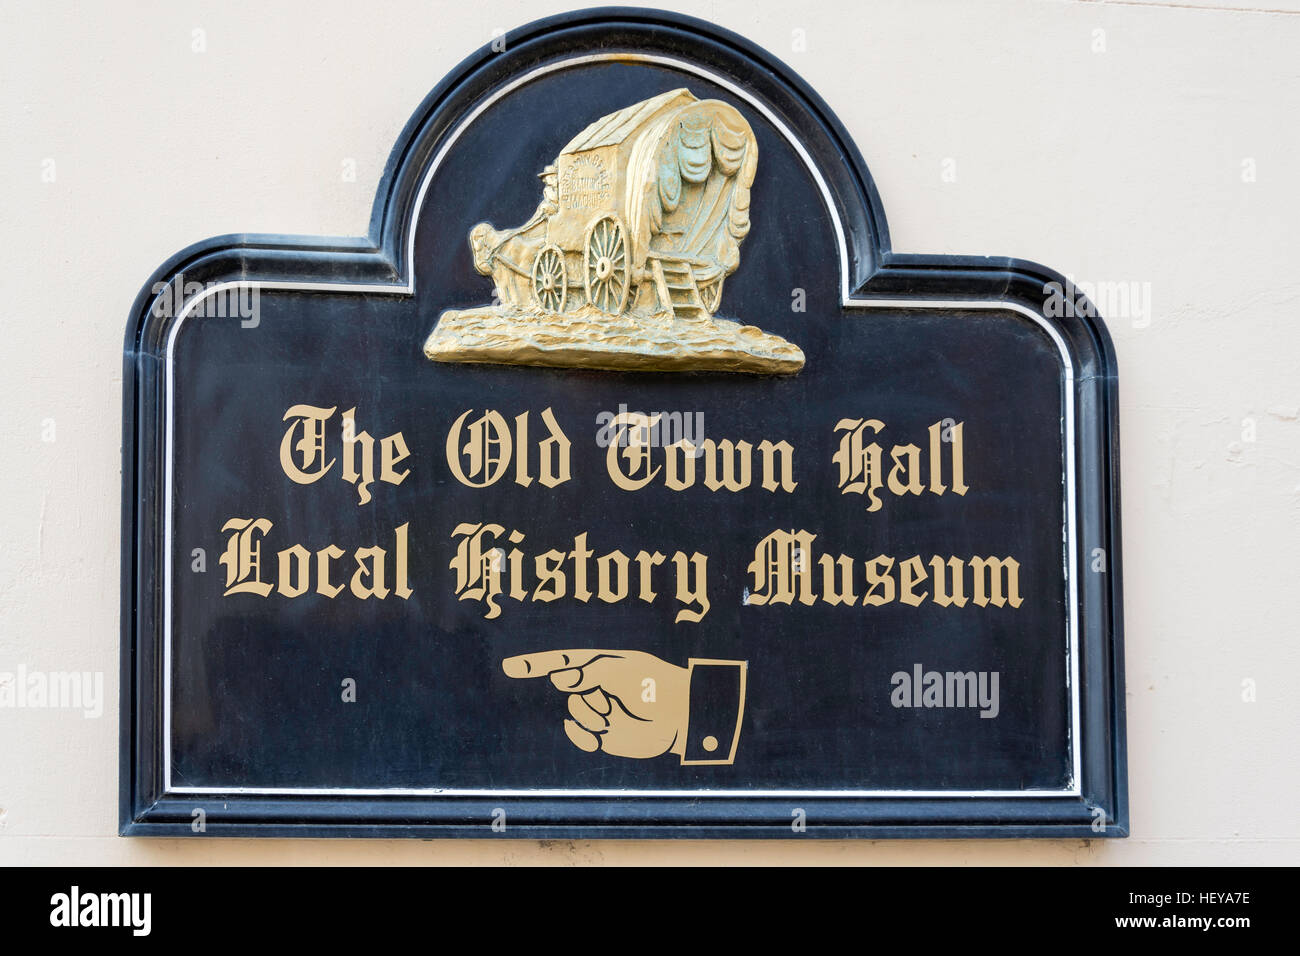 Le Musée de l'histoire locale signe, Market Place, Margate, Kent, Angleterre, Royaume-Uni Banque D'Images